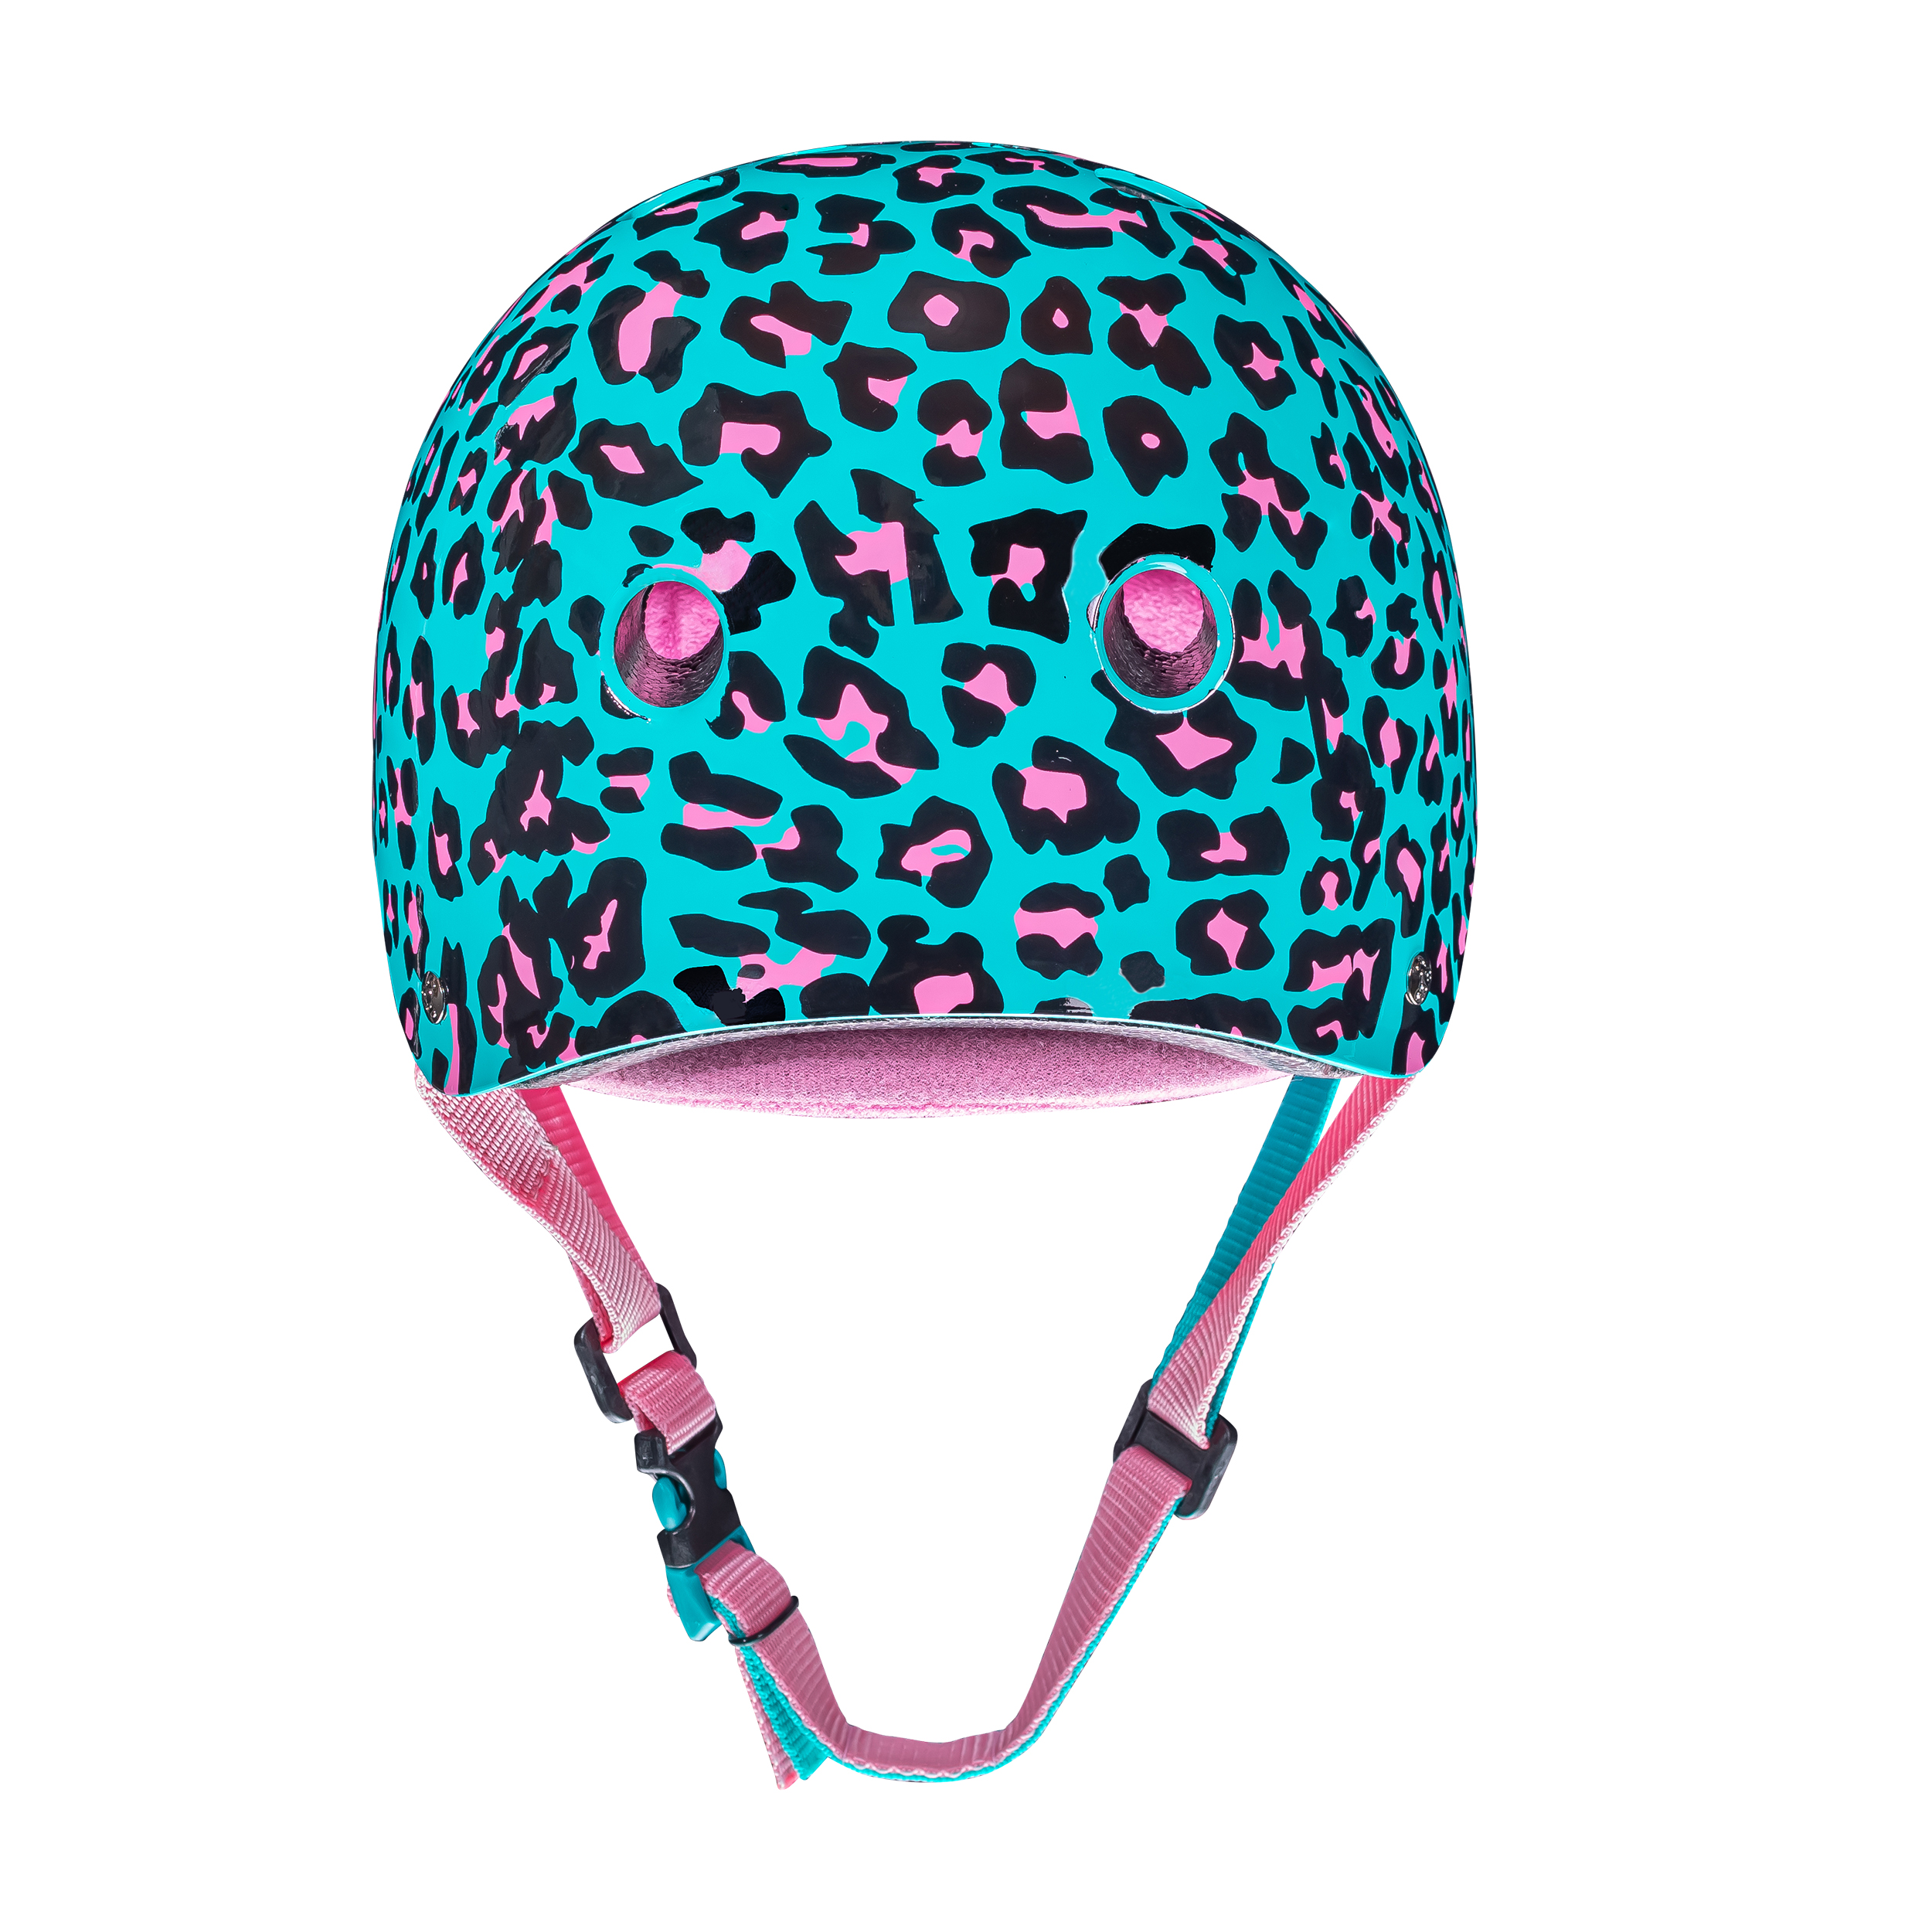 
Moxi Helmet - Blue Leopard